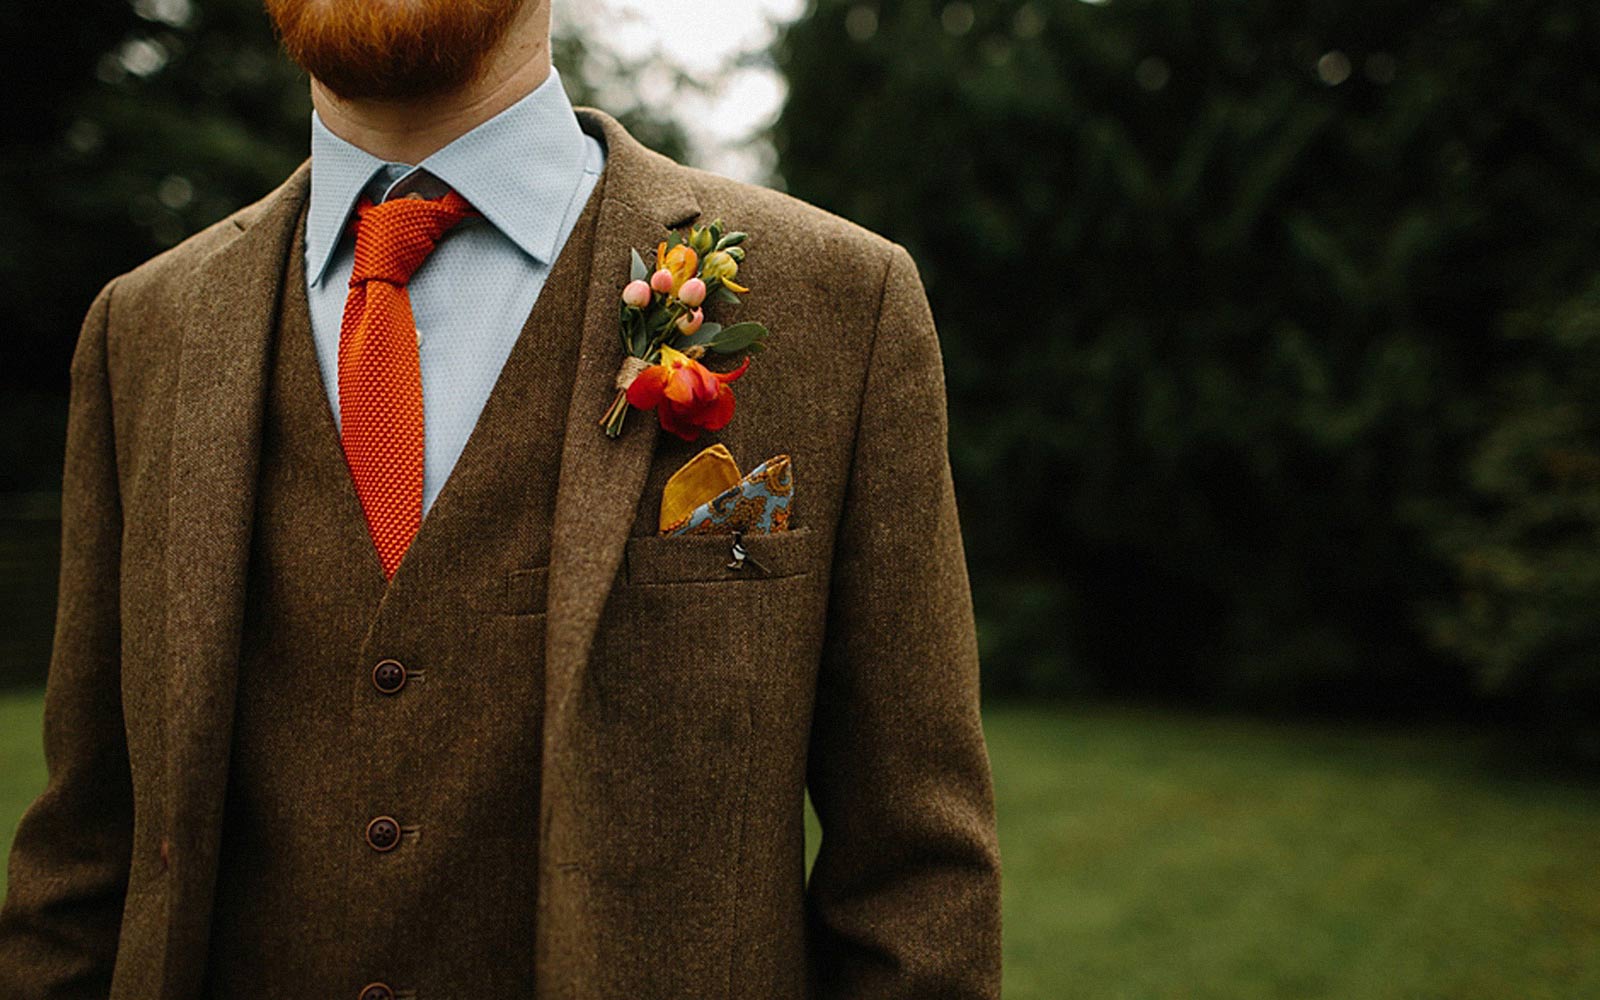 fall wedding attire for men